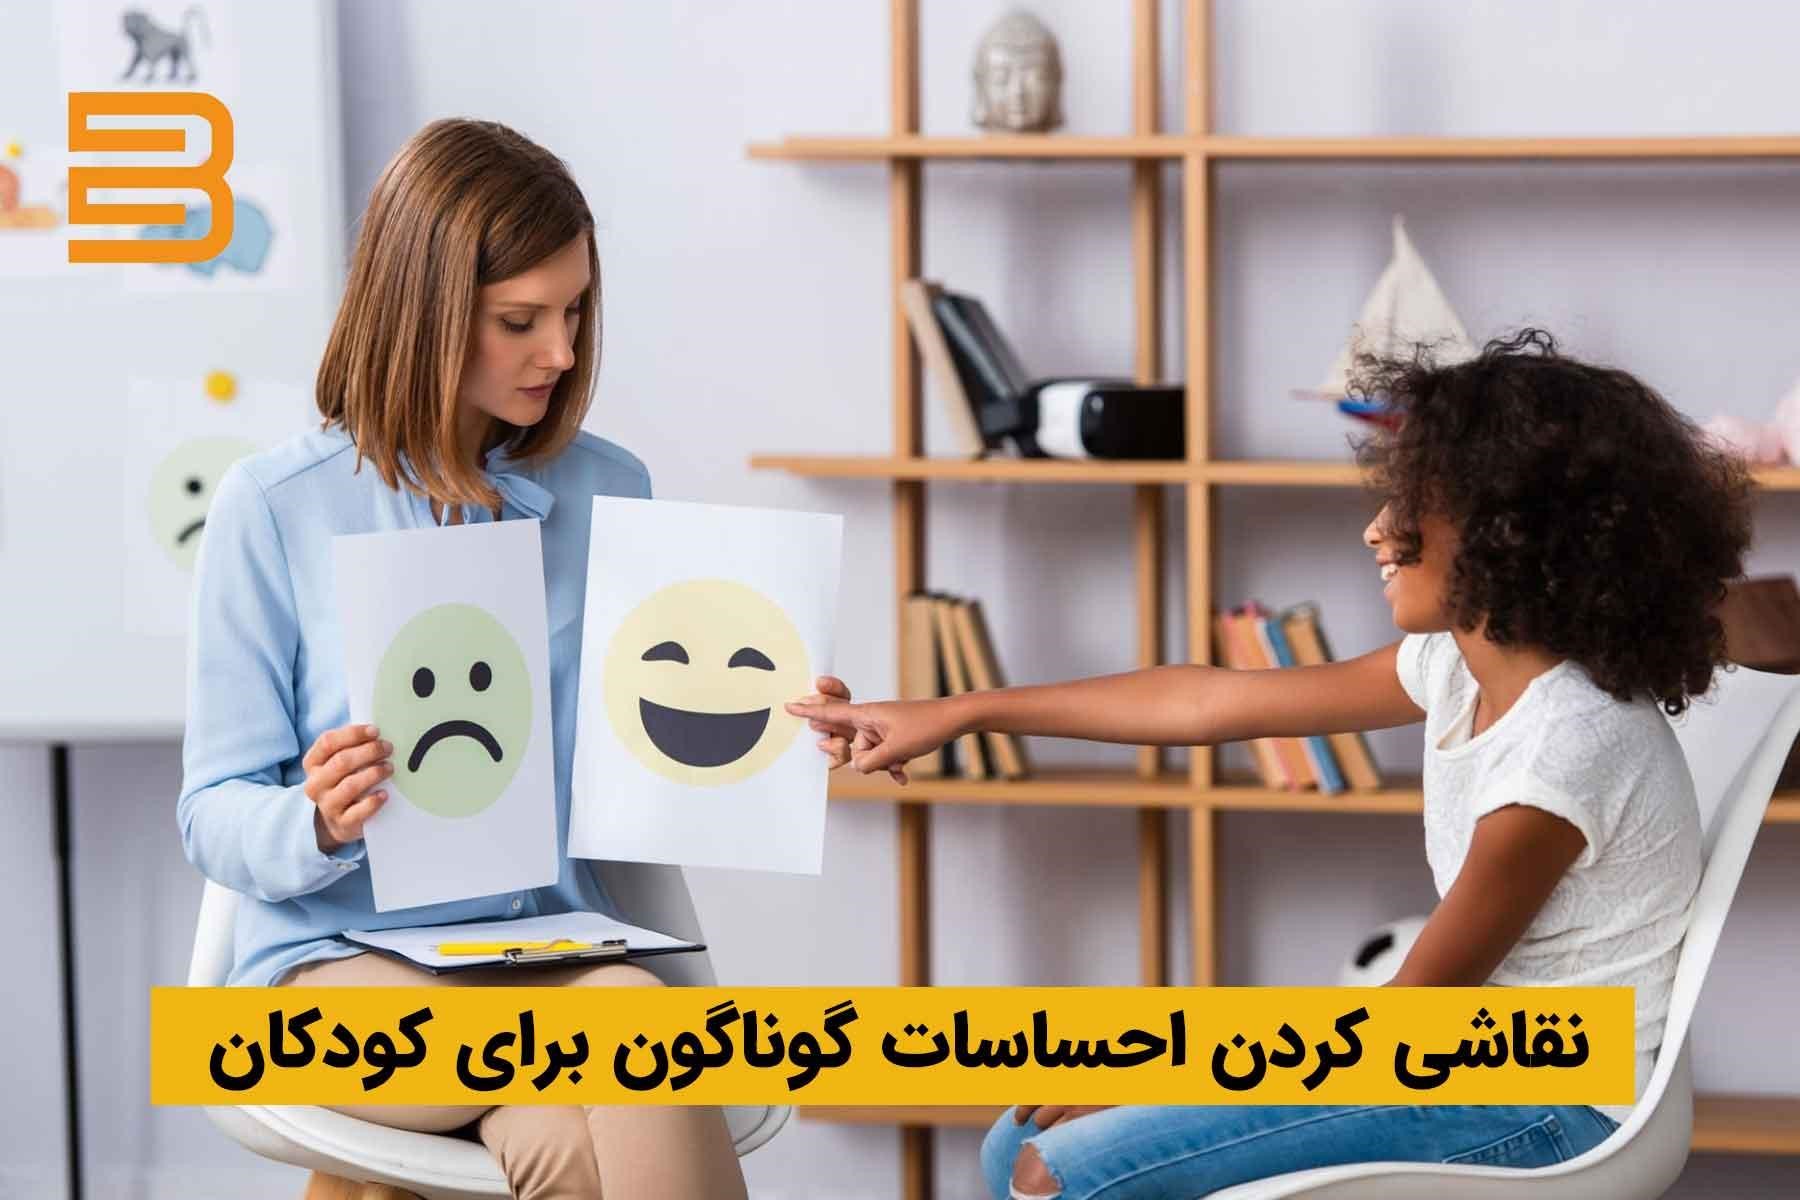 نقاشی احساسات برای کودکان - کشیدن شکلک عصبانی و خوشحال برای آموزش احساسات به کودک 